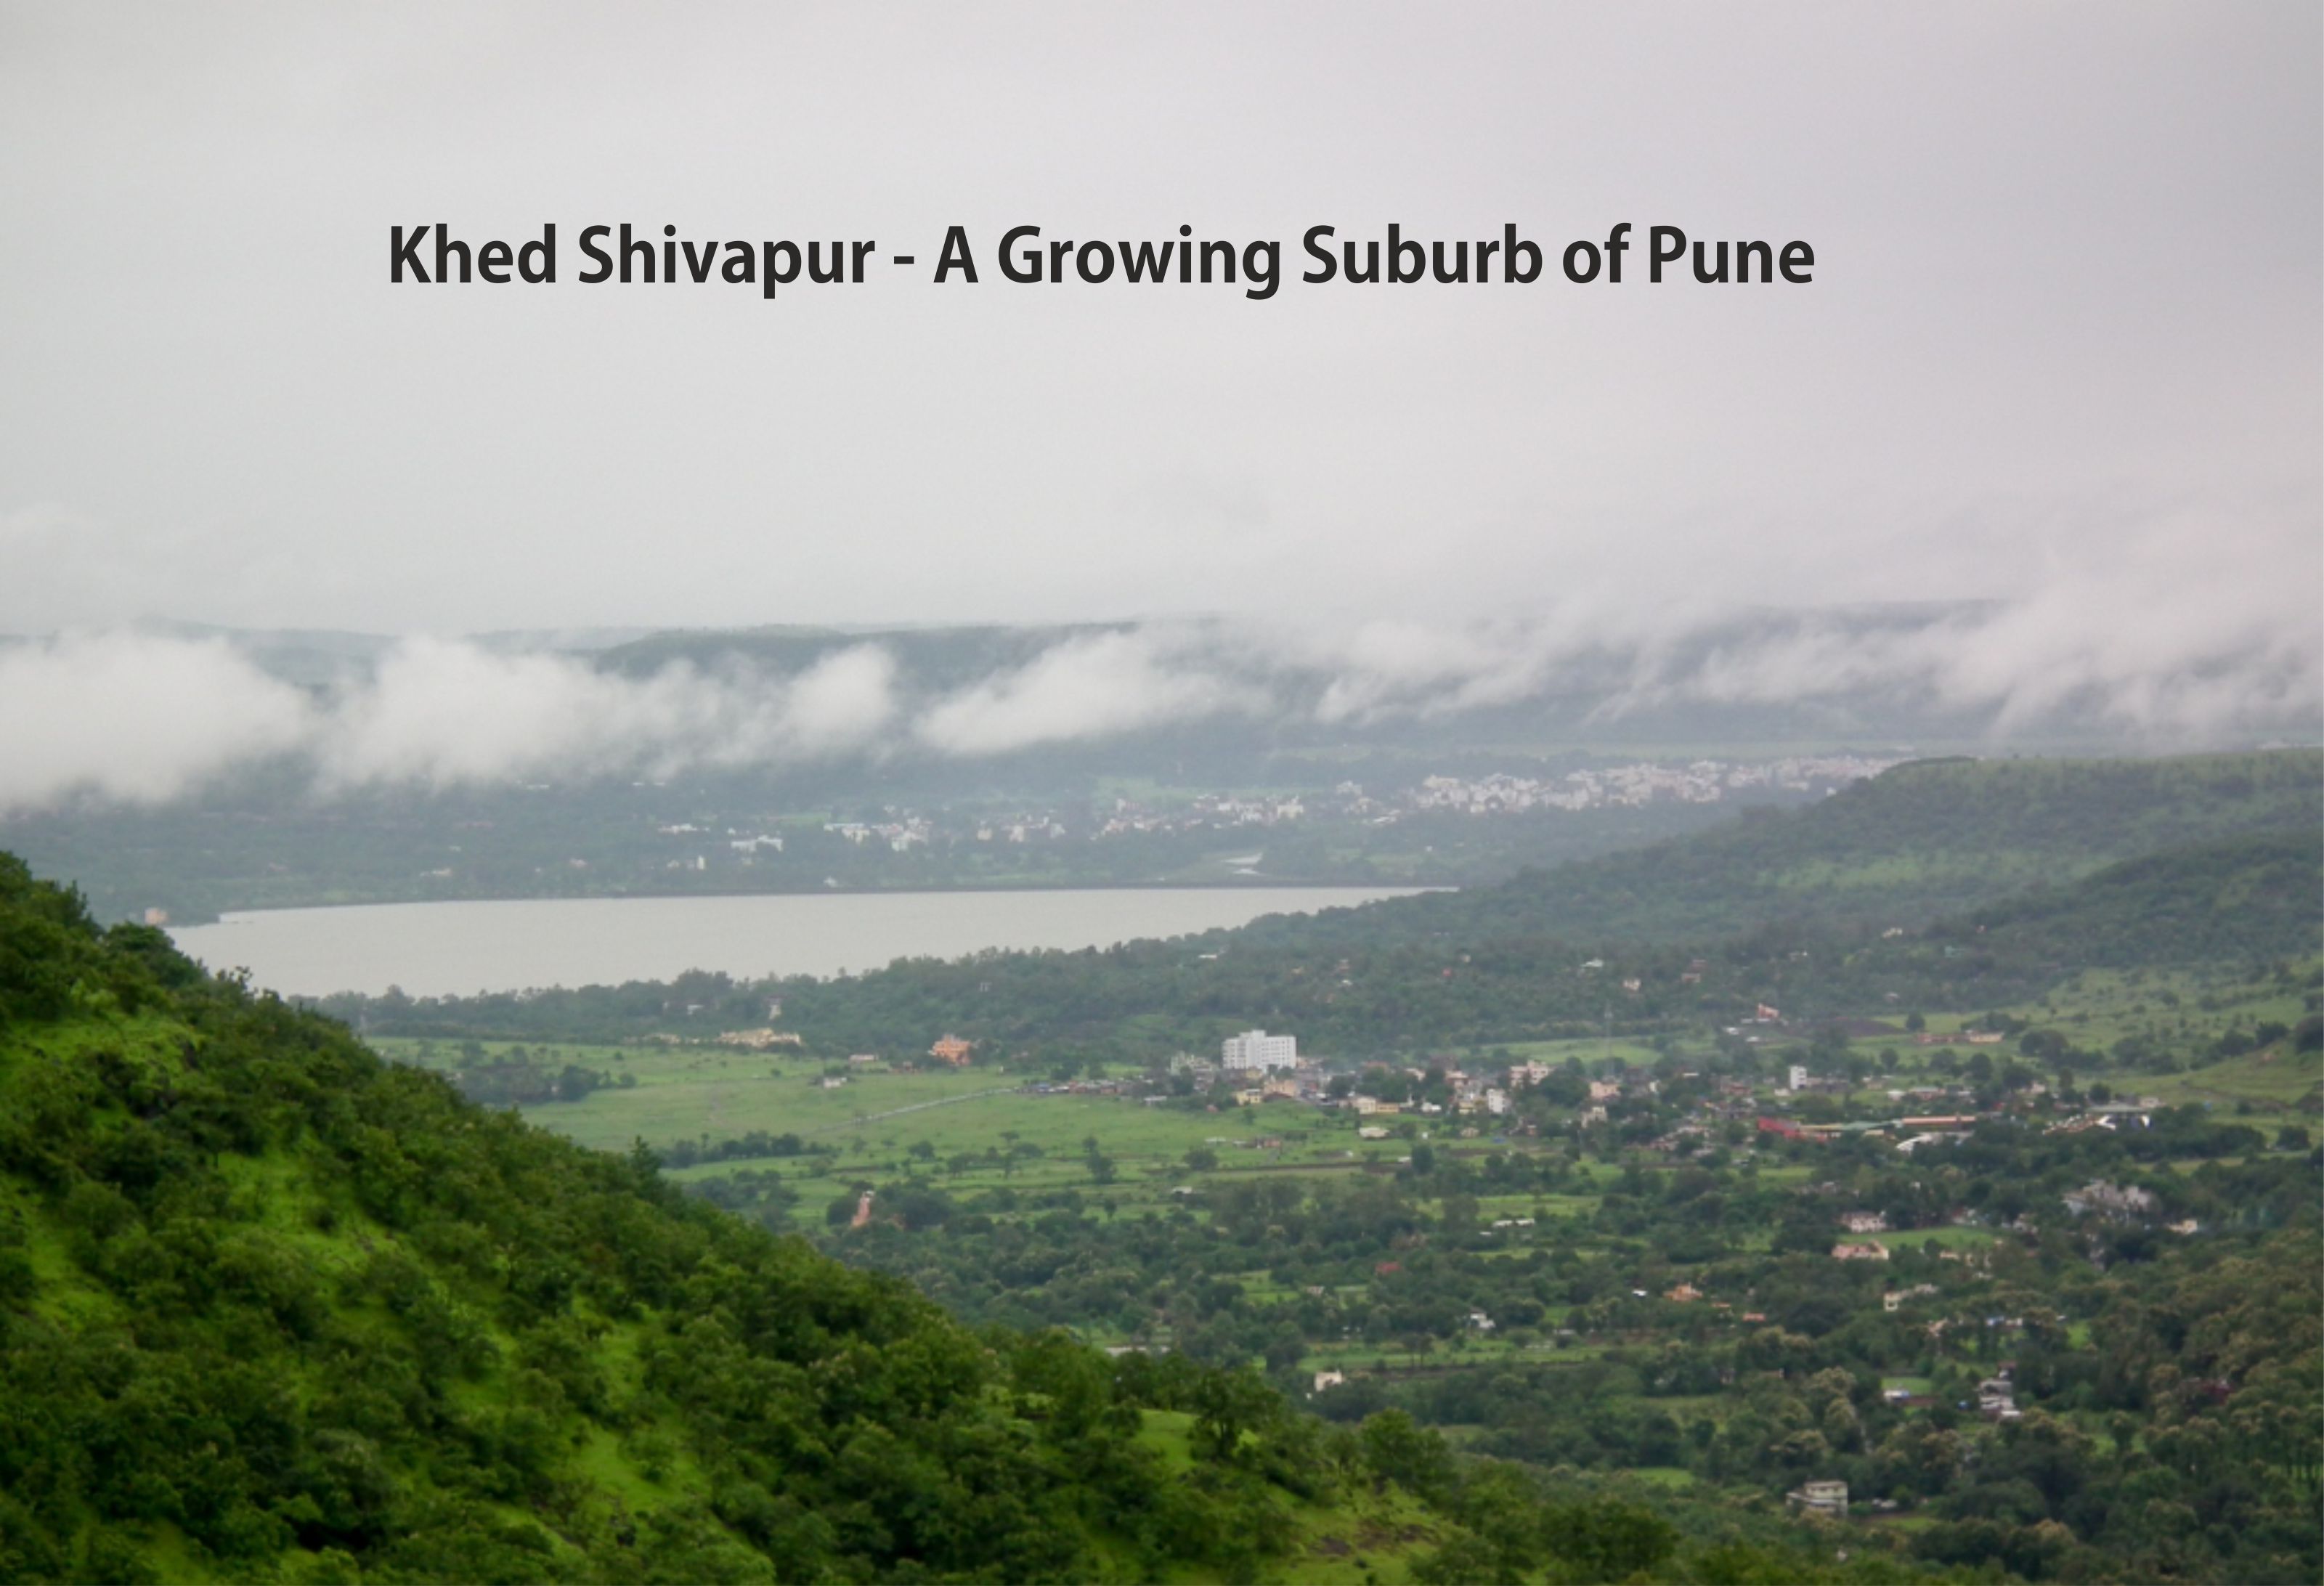 Khed Shivapur